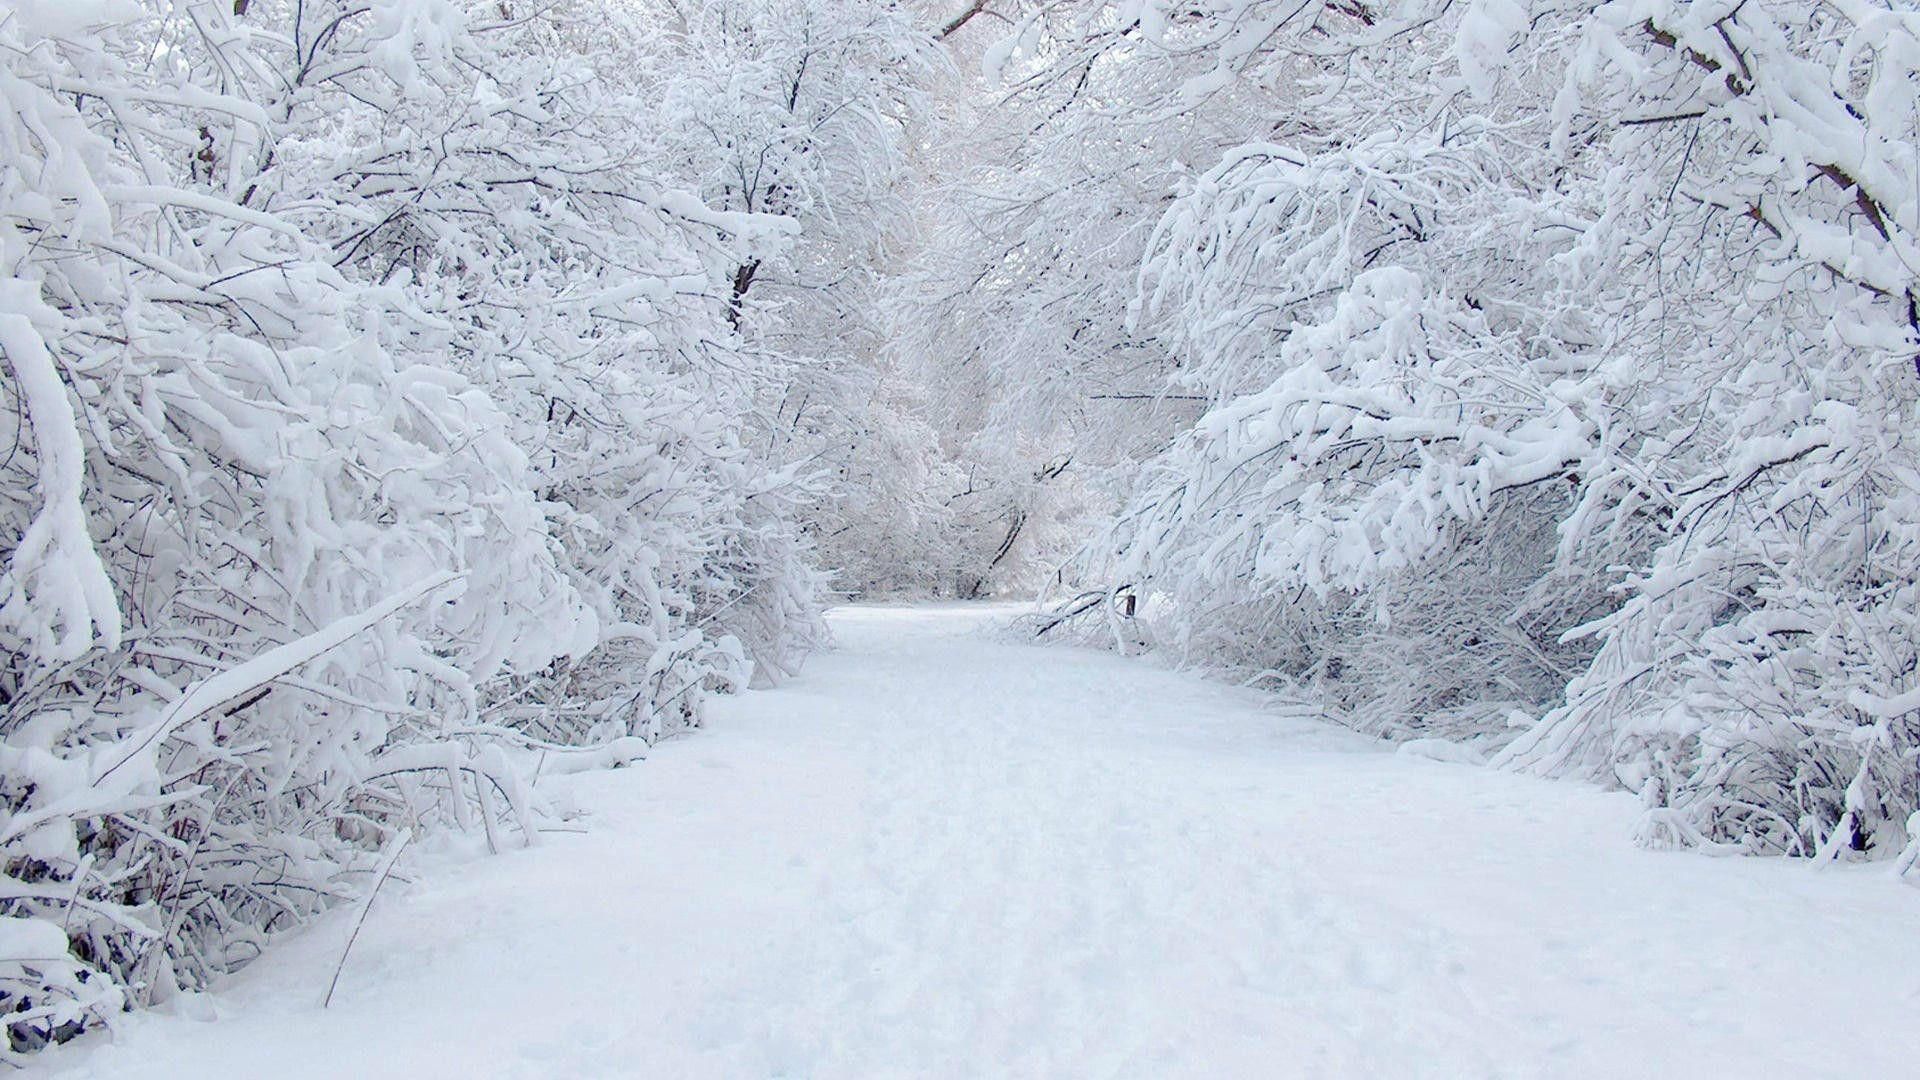 Latest Winter Wonderland Background Picture FULL HD 1080p For PC Background. Winter wonderland background, Snow picture, Background picture